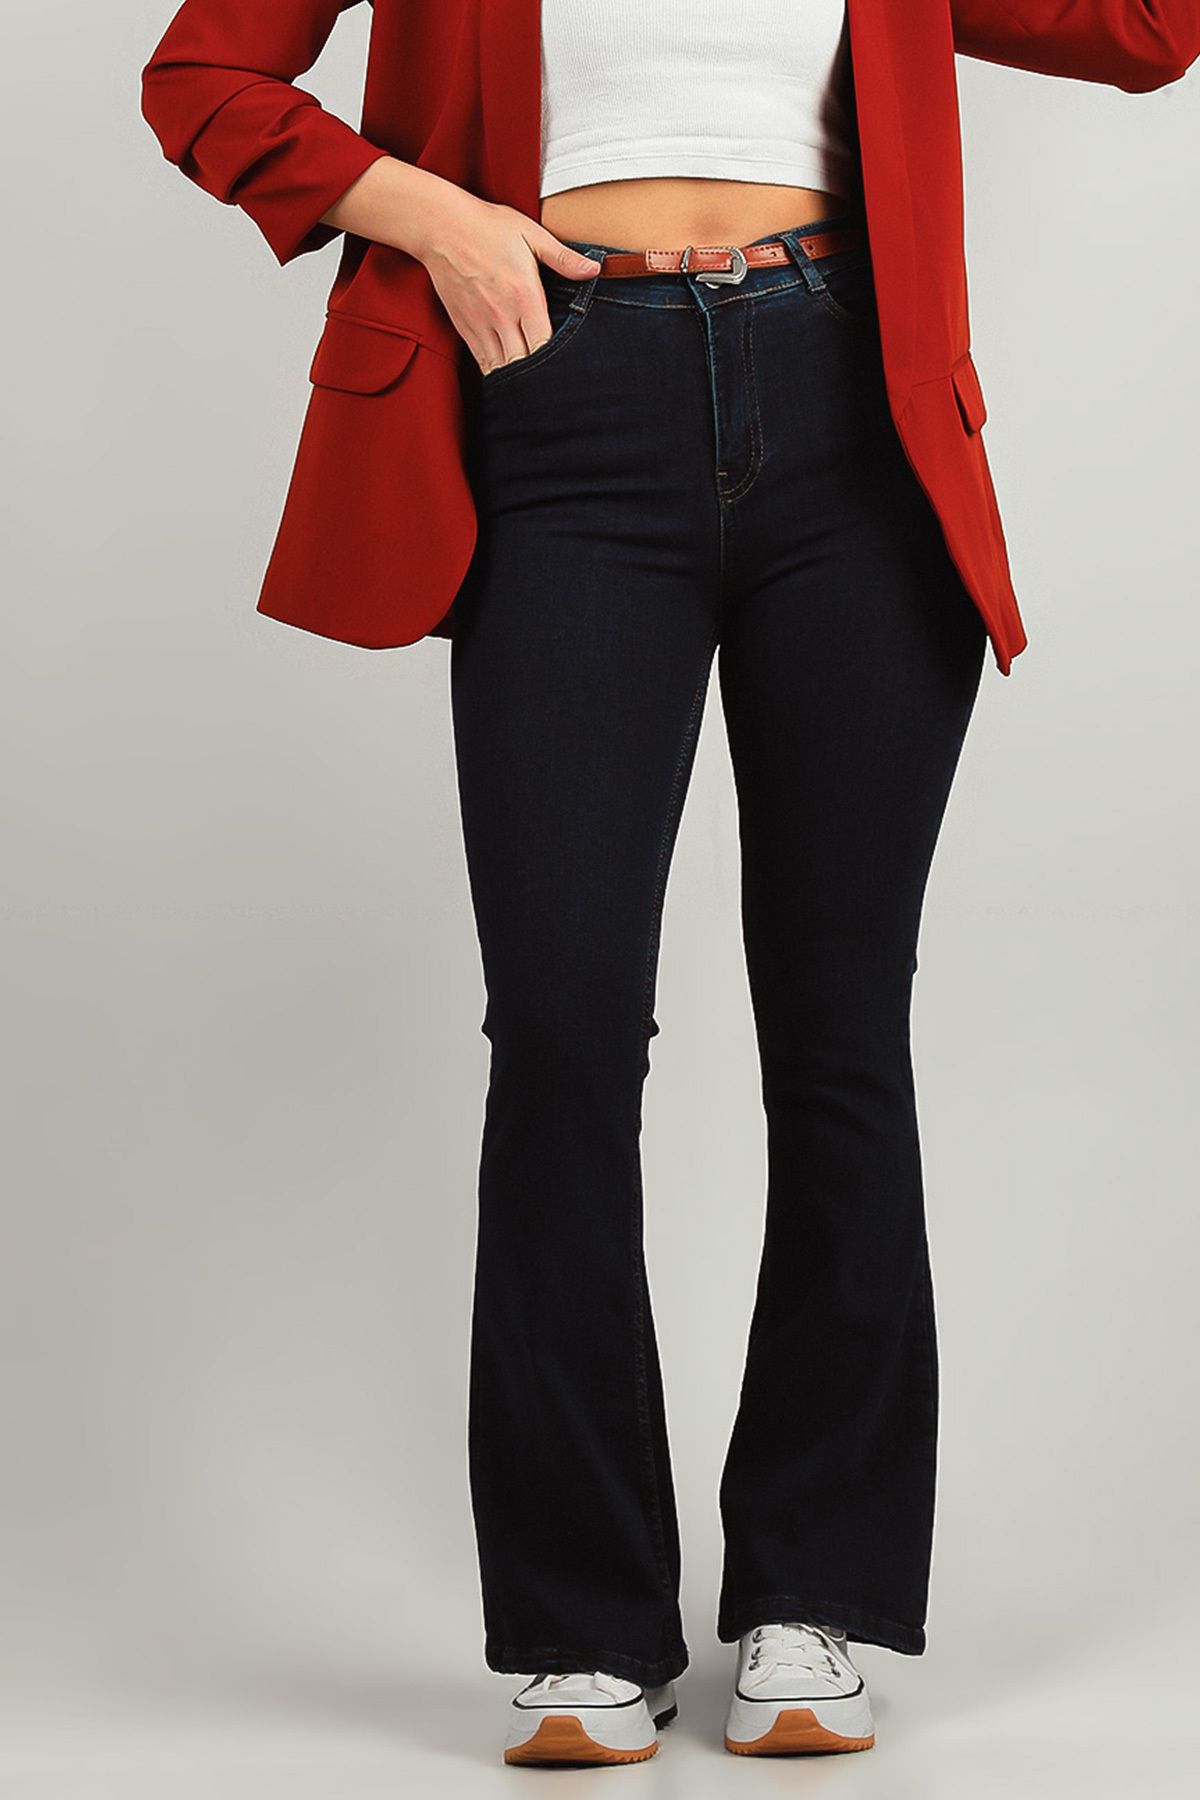 Julude Lacivert Kadın Yüksek Bel İspanyol Paça Likralı Jeans Pantolon